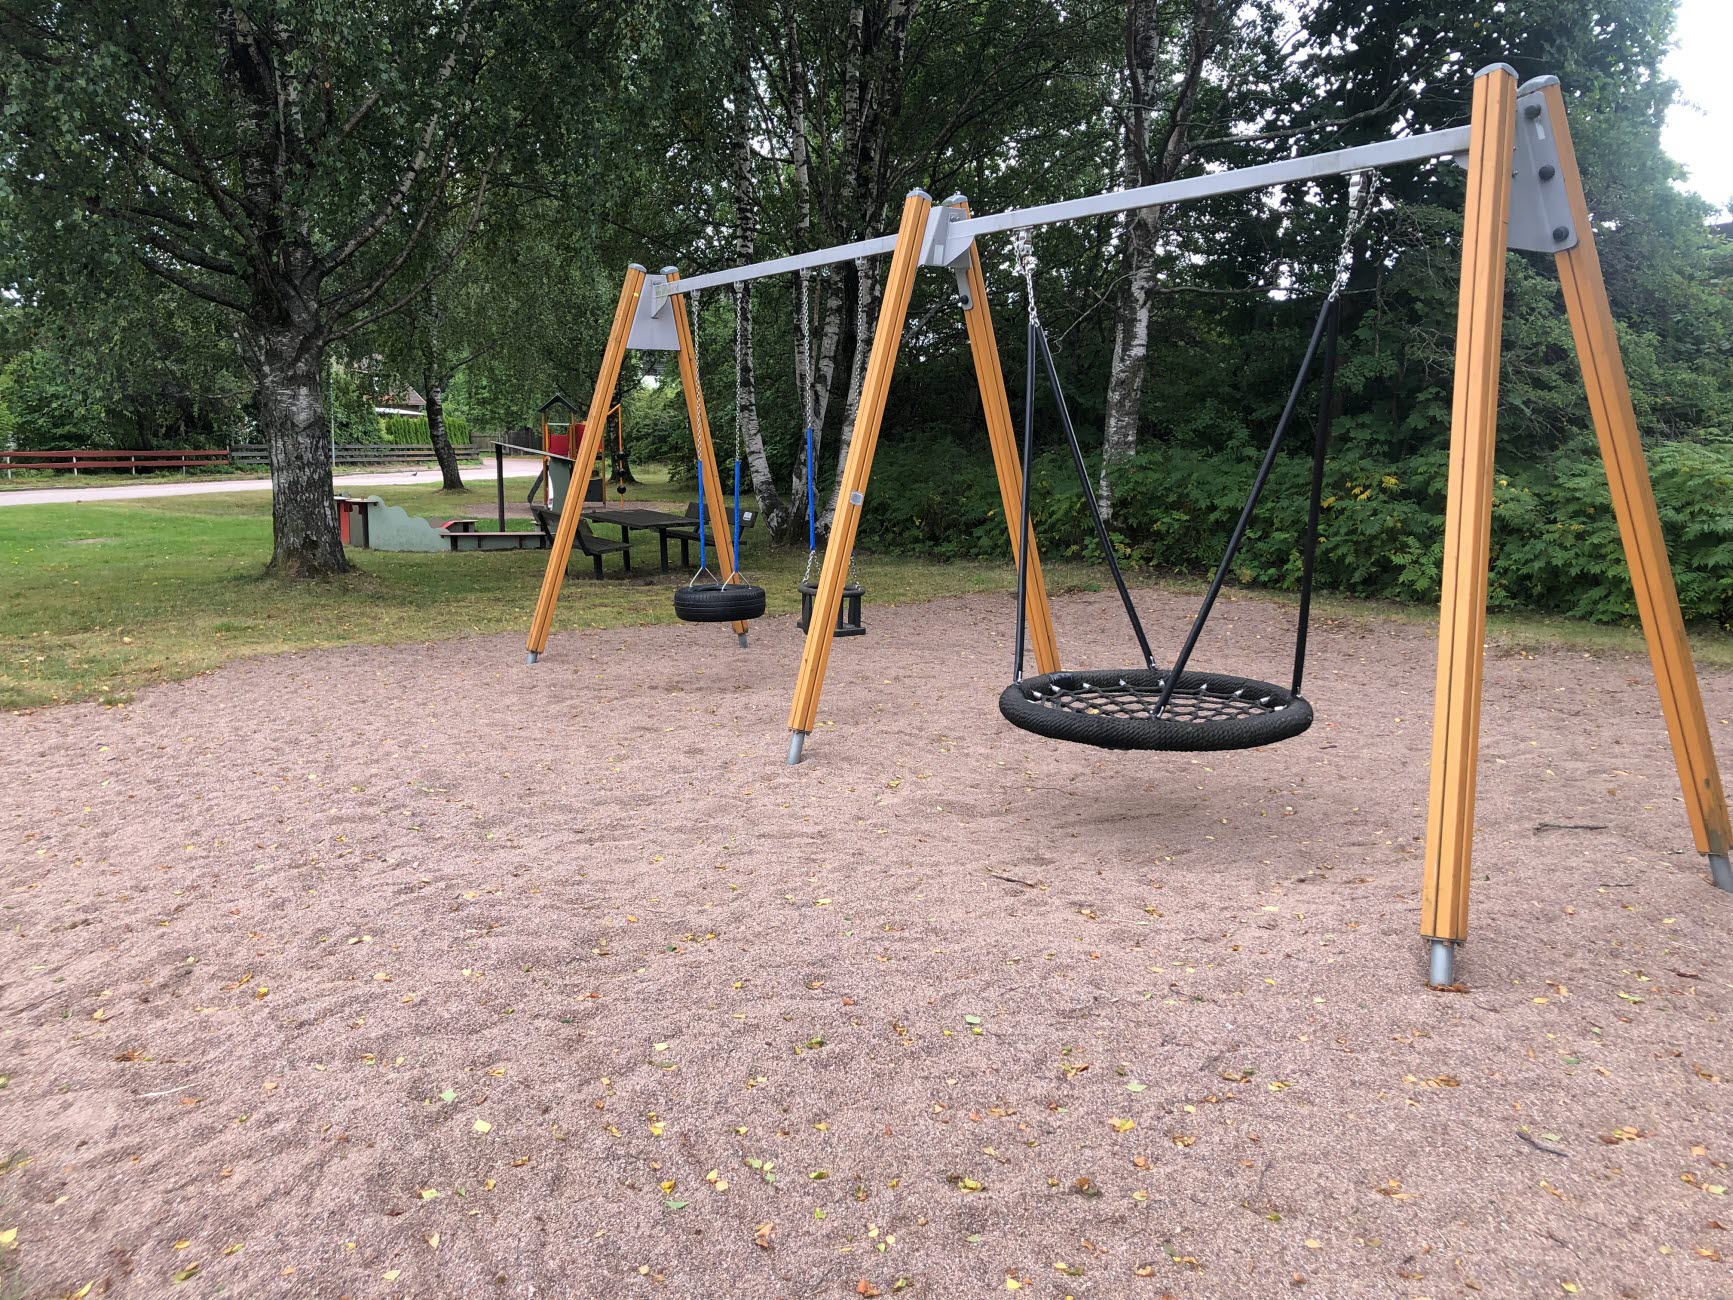 På Rödvingens lekplats finns olika gungor, klätterställning och en tillgänglighetsanpassad sandlek.